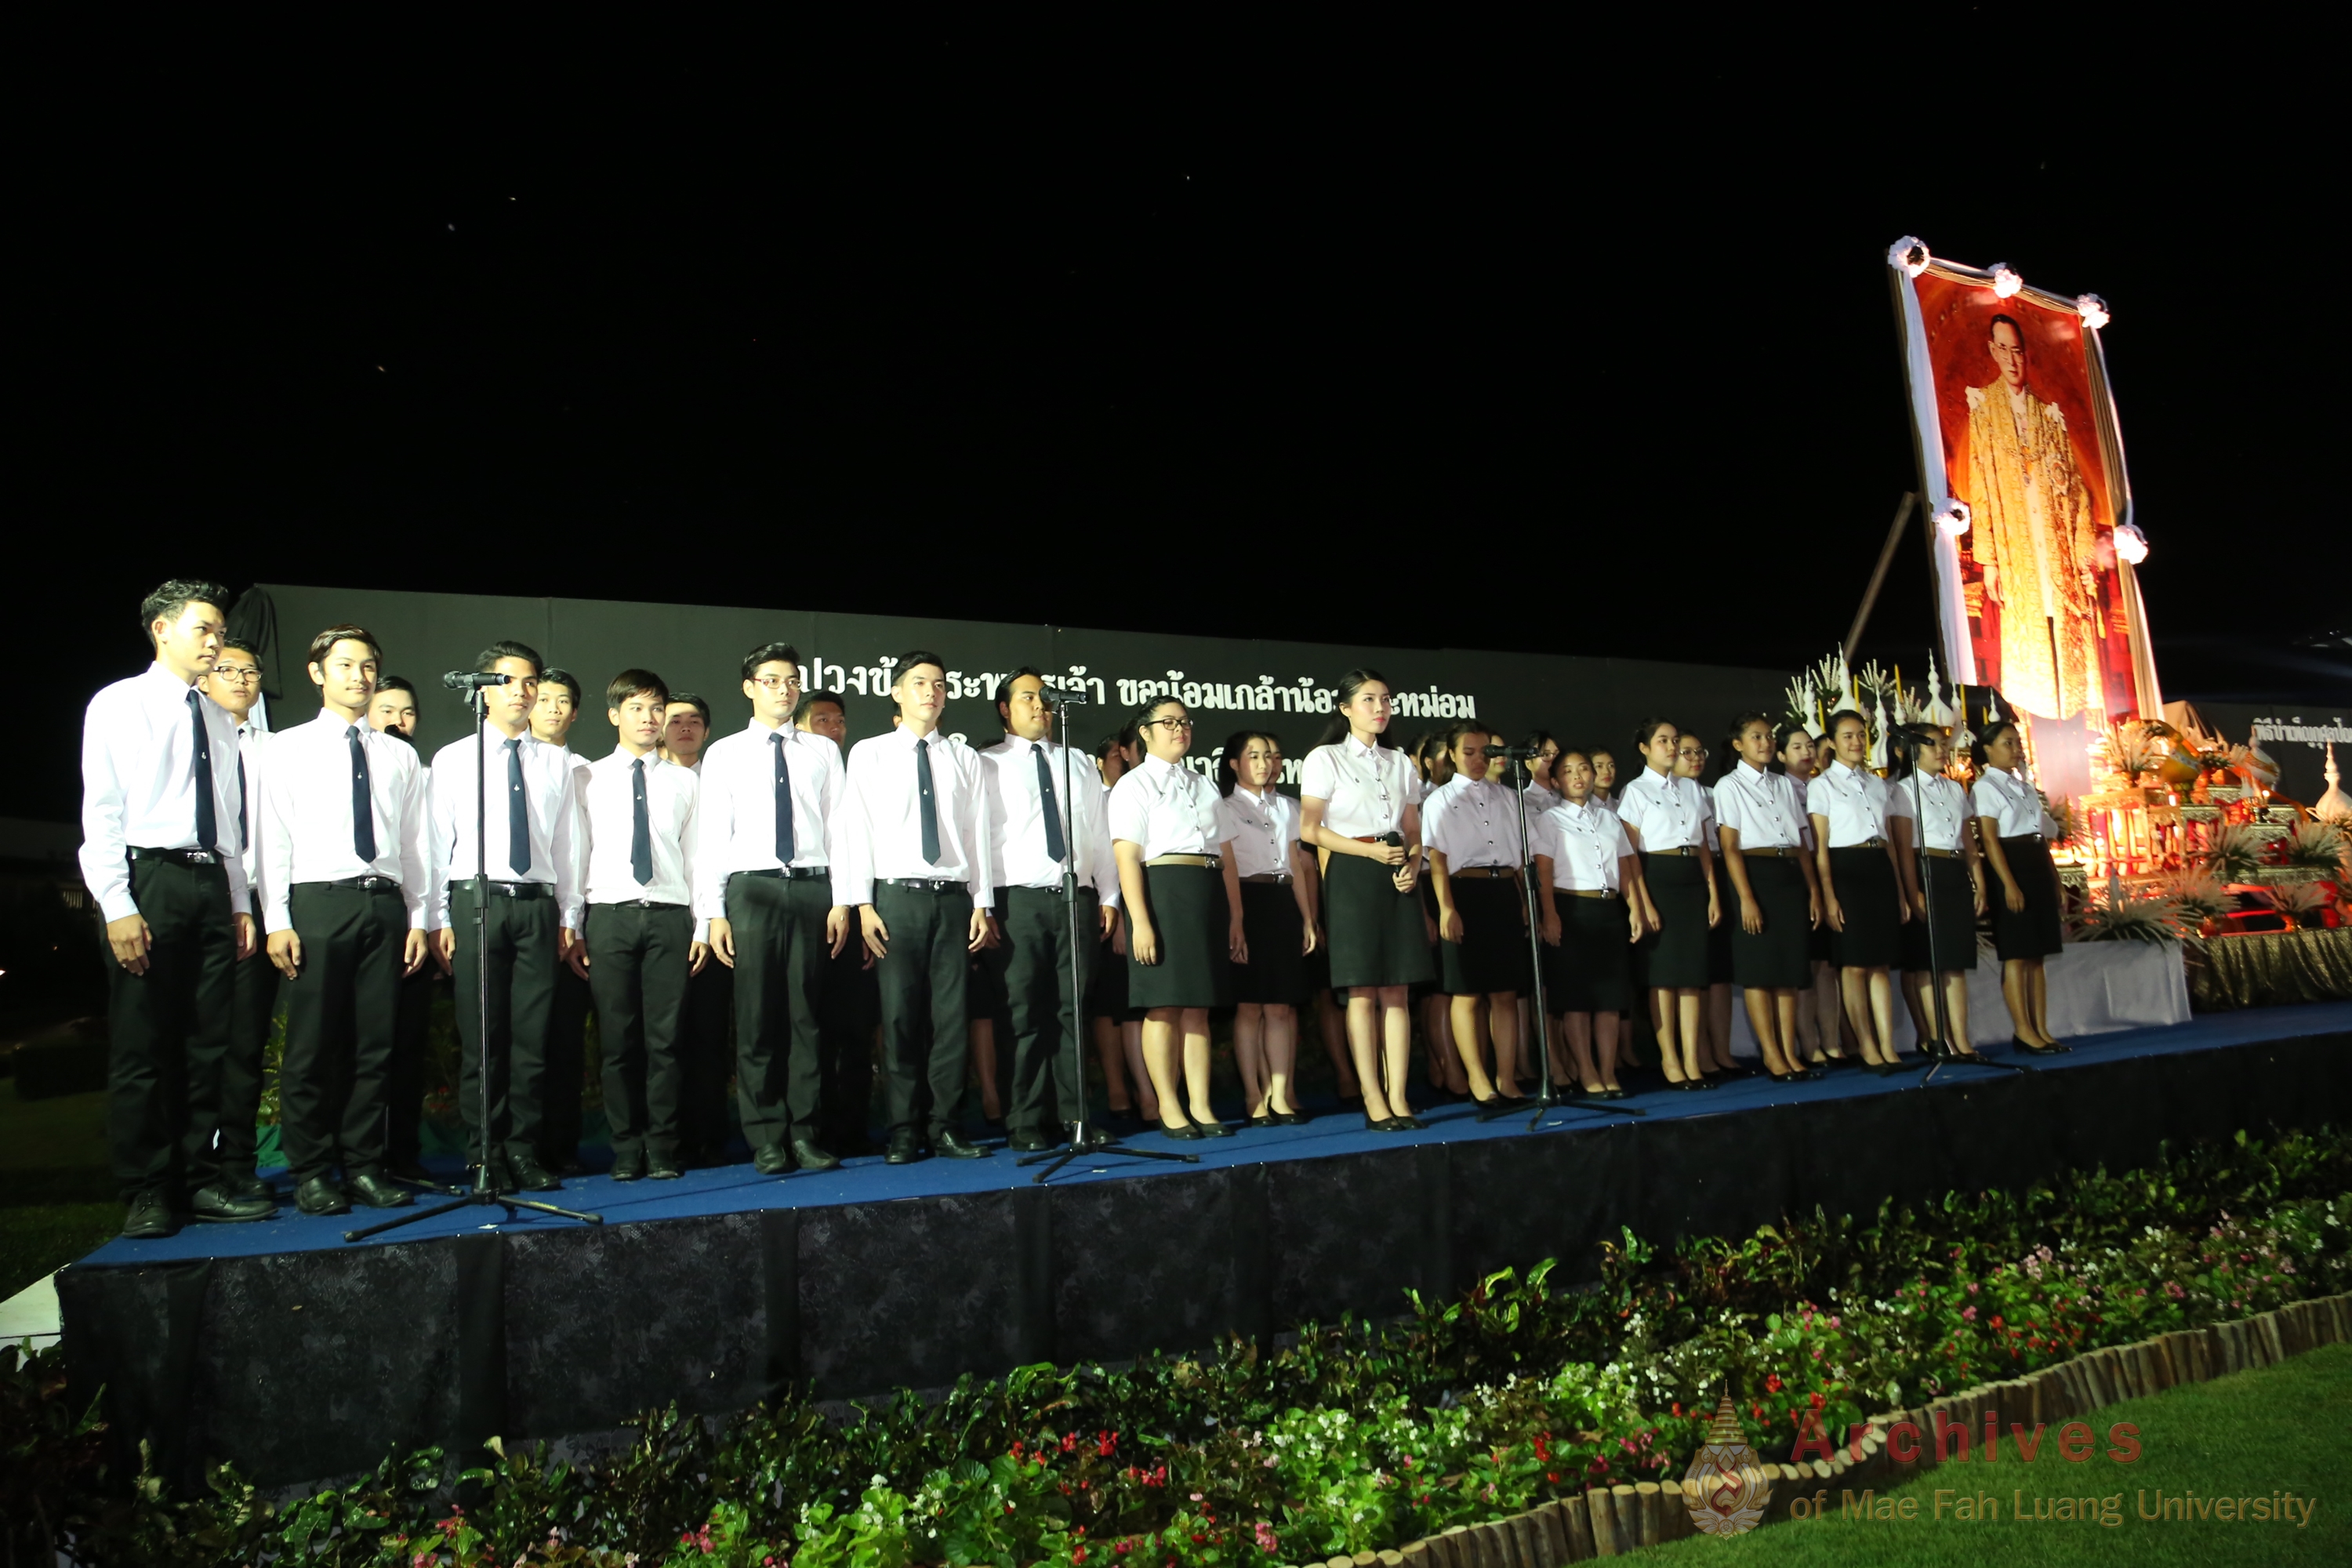 นักศึกษามหาวิทยาลัยแม่ฟ้าหลวง วงดนตรี MFU Band นำผู้ร่วมพิธีร้องเพลงเพลงสรรเสริญพระบารมี ณ ลานเฉลิมพระเกียรติสมเด็จพระศรีนครินทราบรมราชชนนี